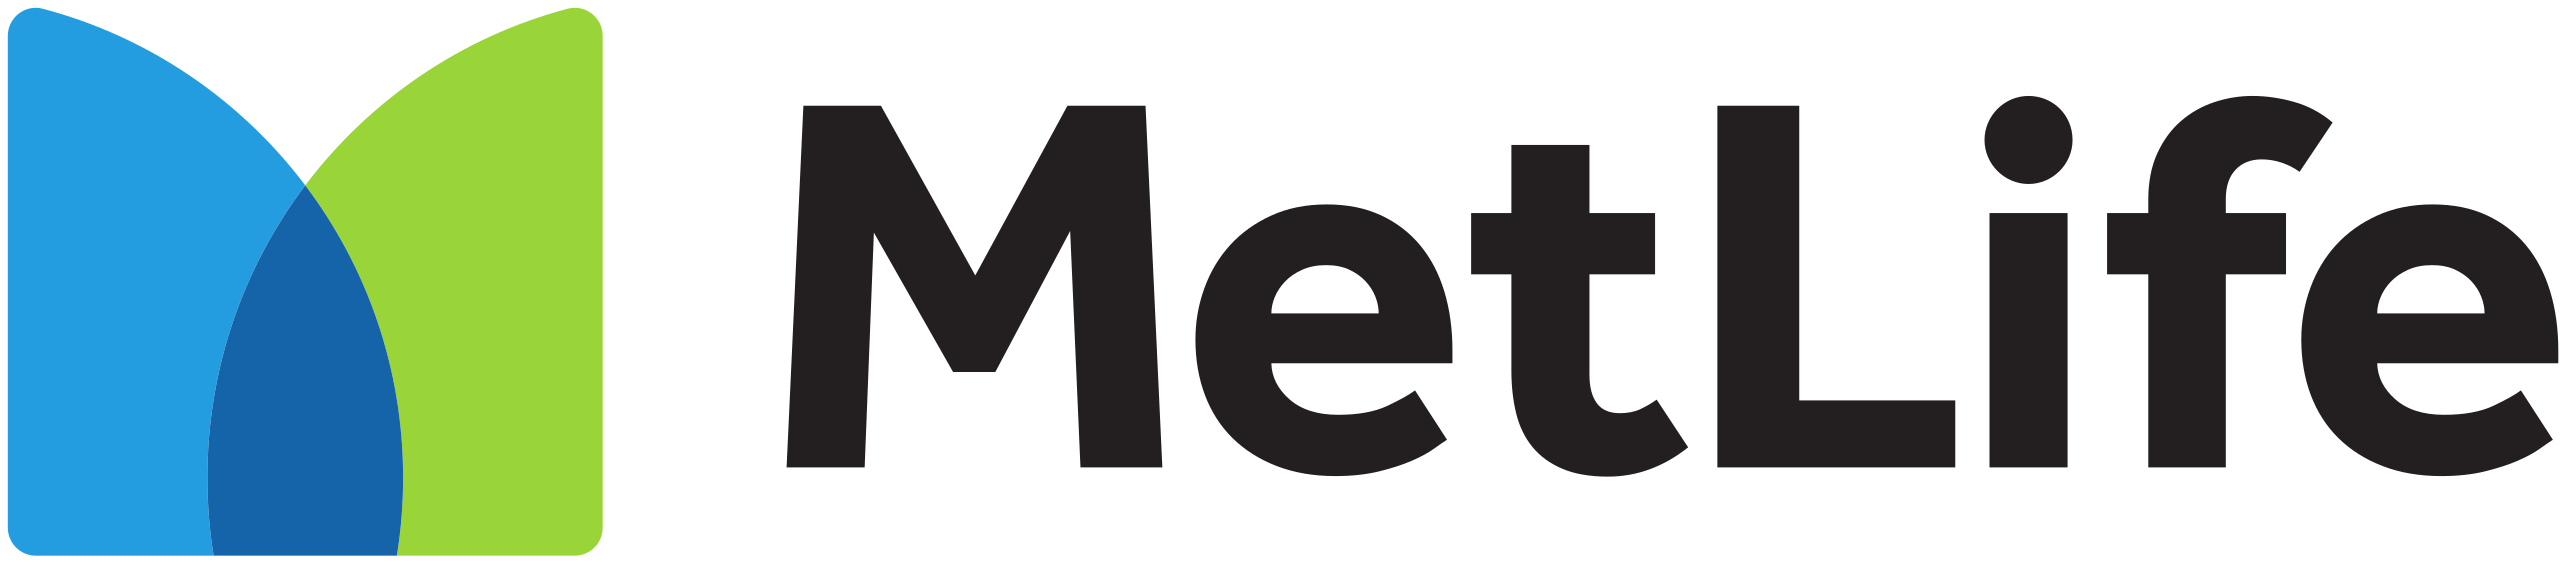 2560px-MetLife_logo.svg.png